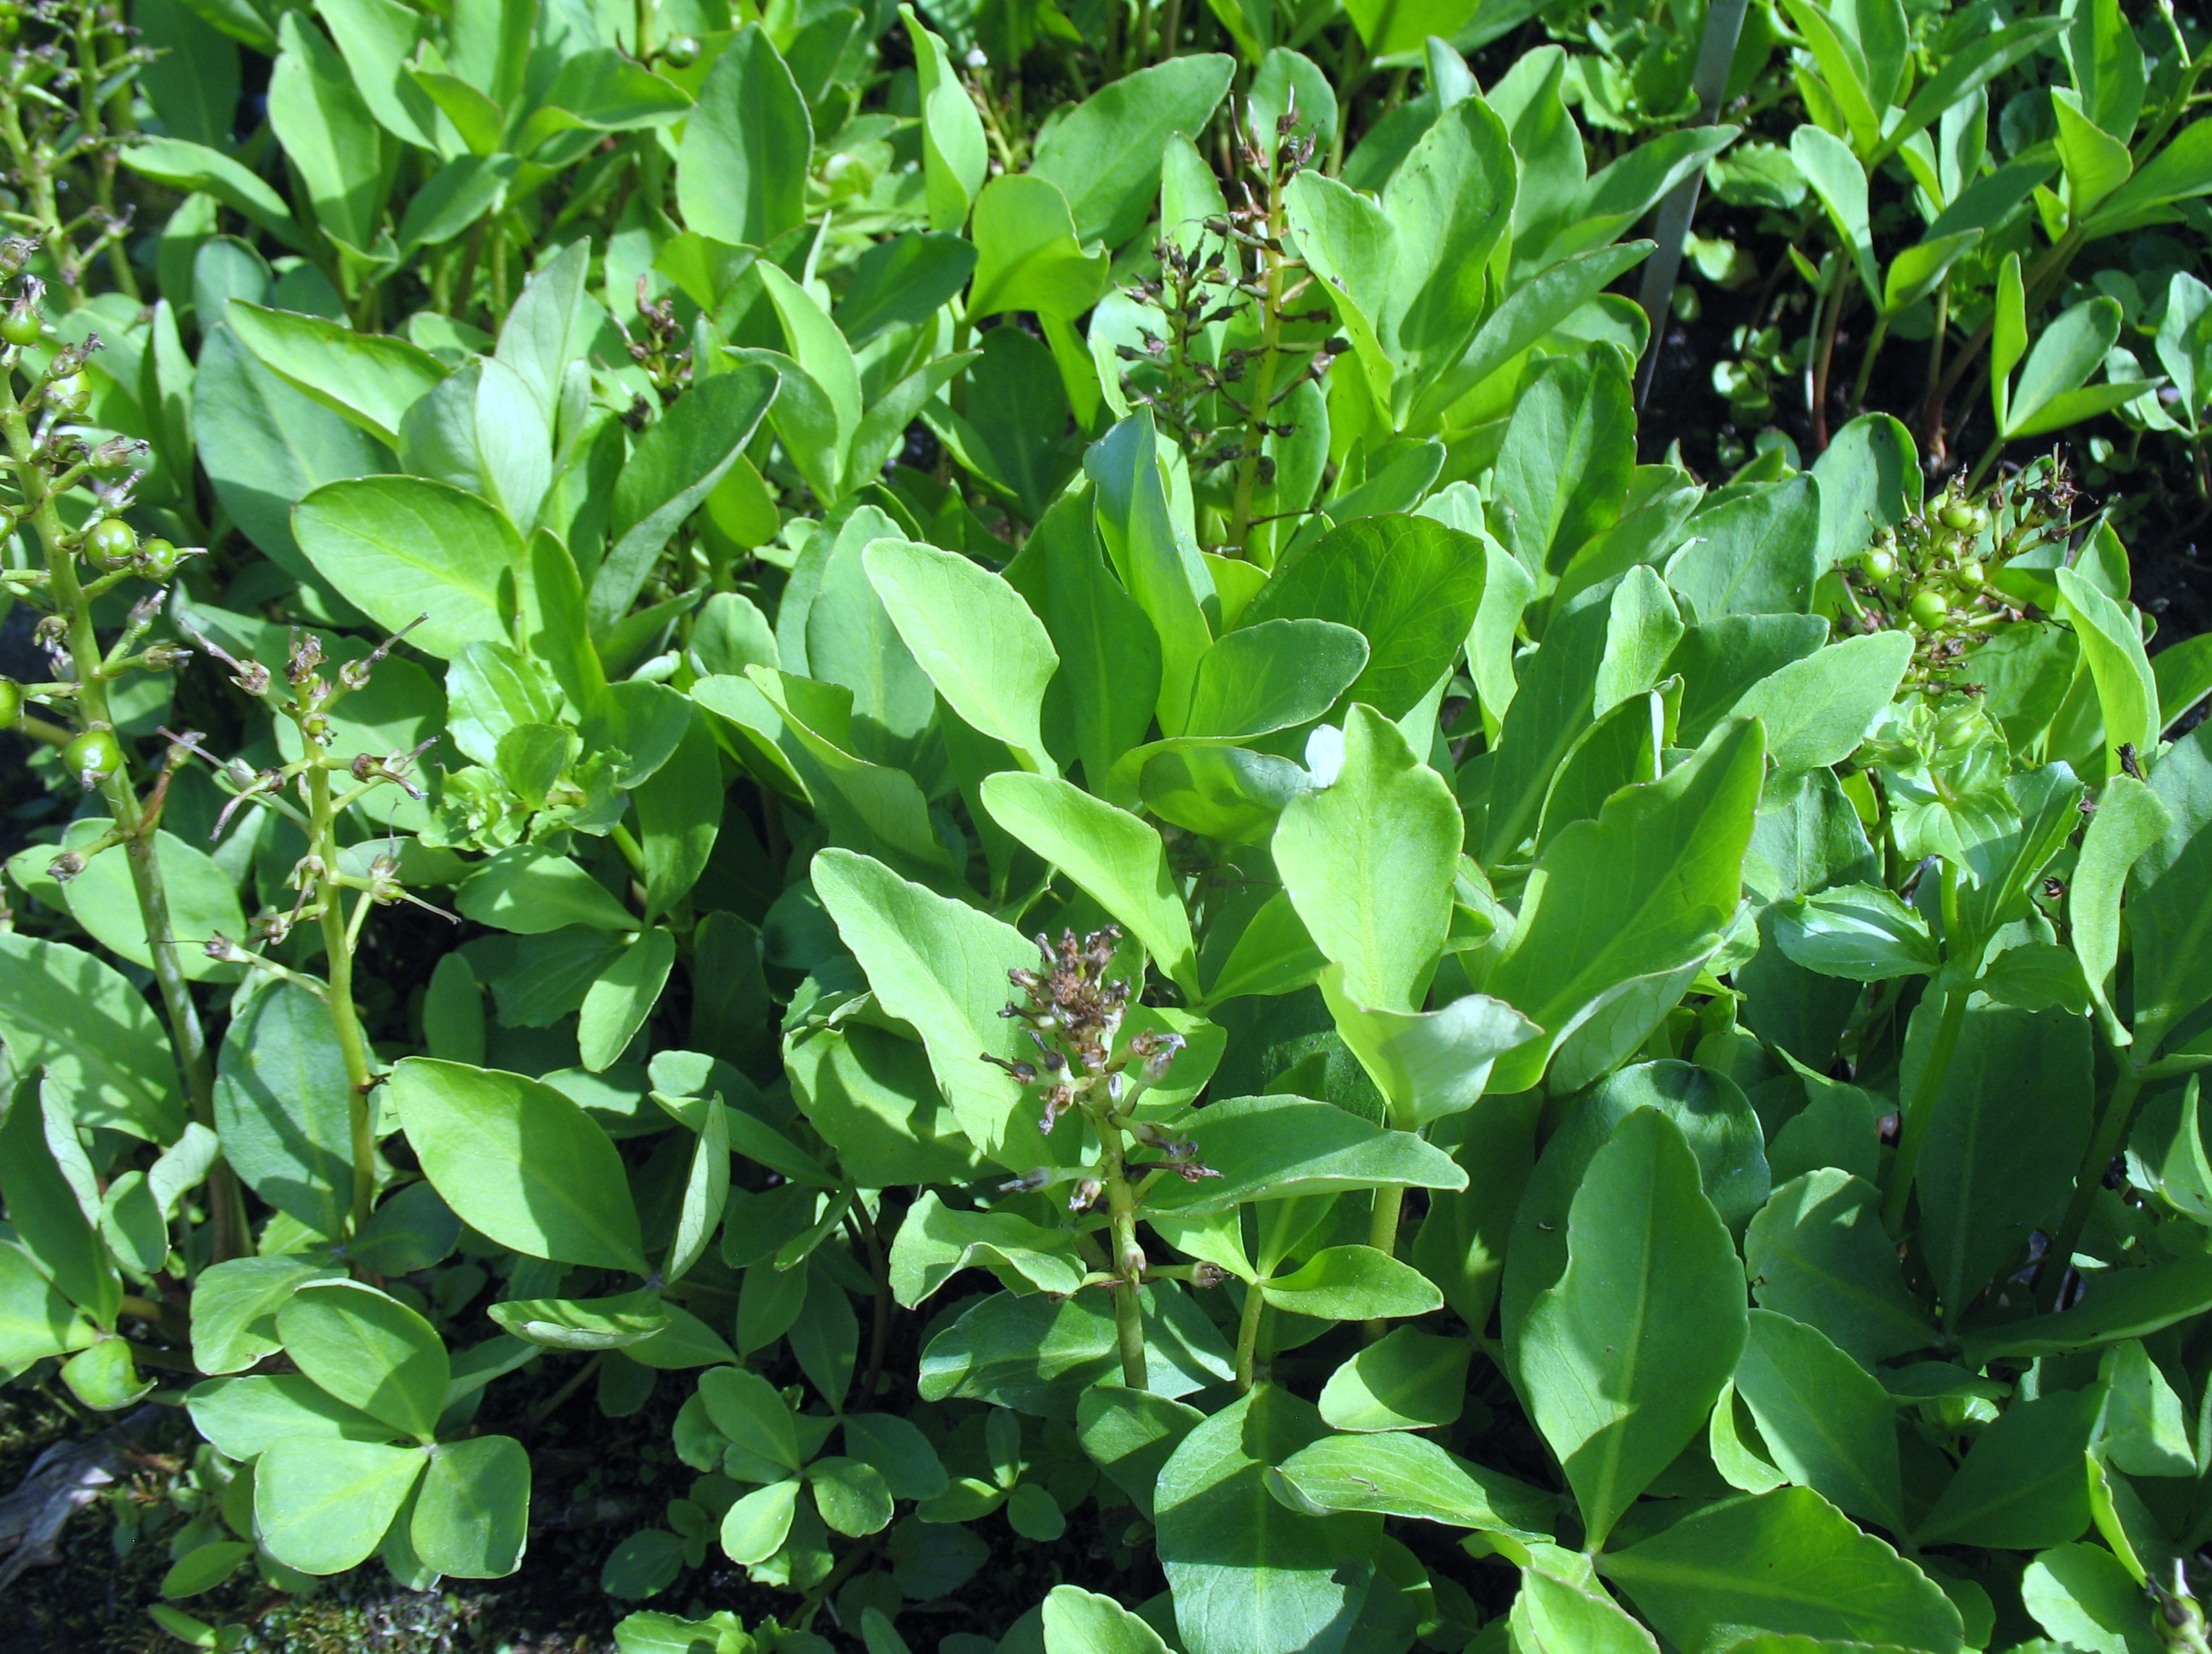 Menyanthes trifoliata / Bogbean, Marsh Trefoil, Marsh Clover, Buckbean